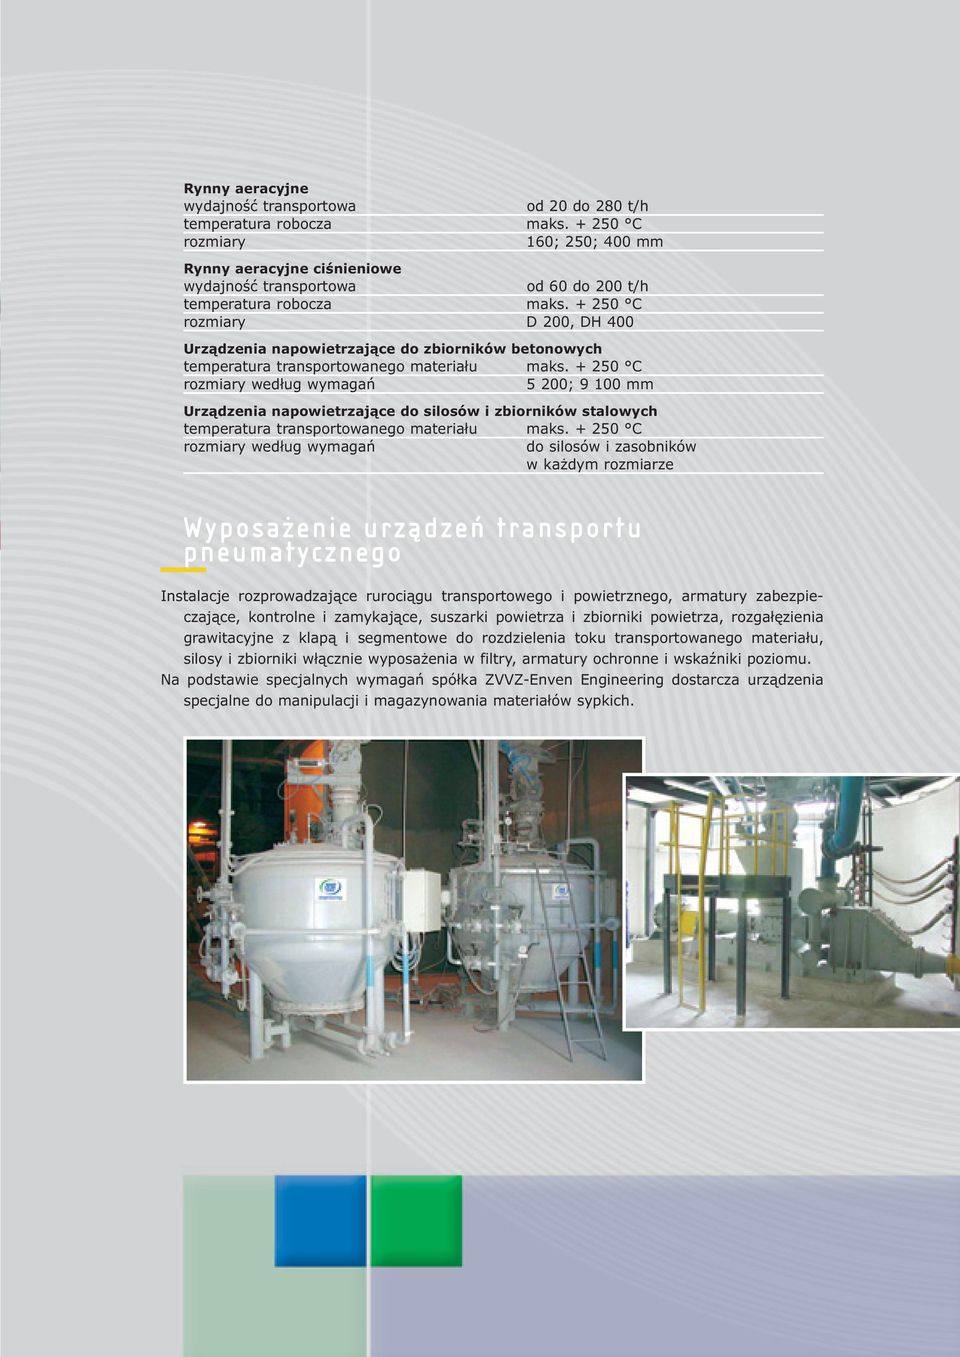 + 250 C rozmiary D 200, DH 400 Urządzenia napowietrzające do zbiorników betonowych temperatura transportowanego materiału maks.